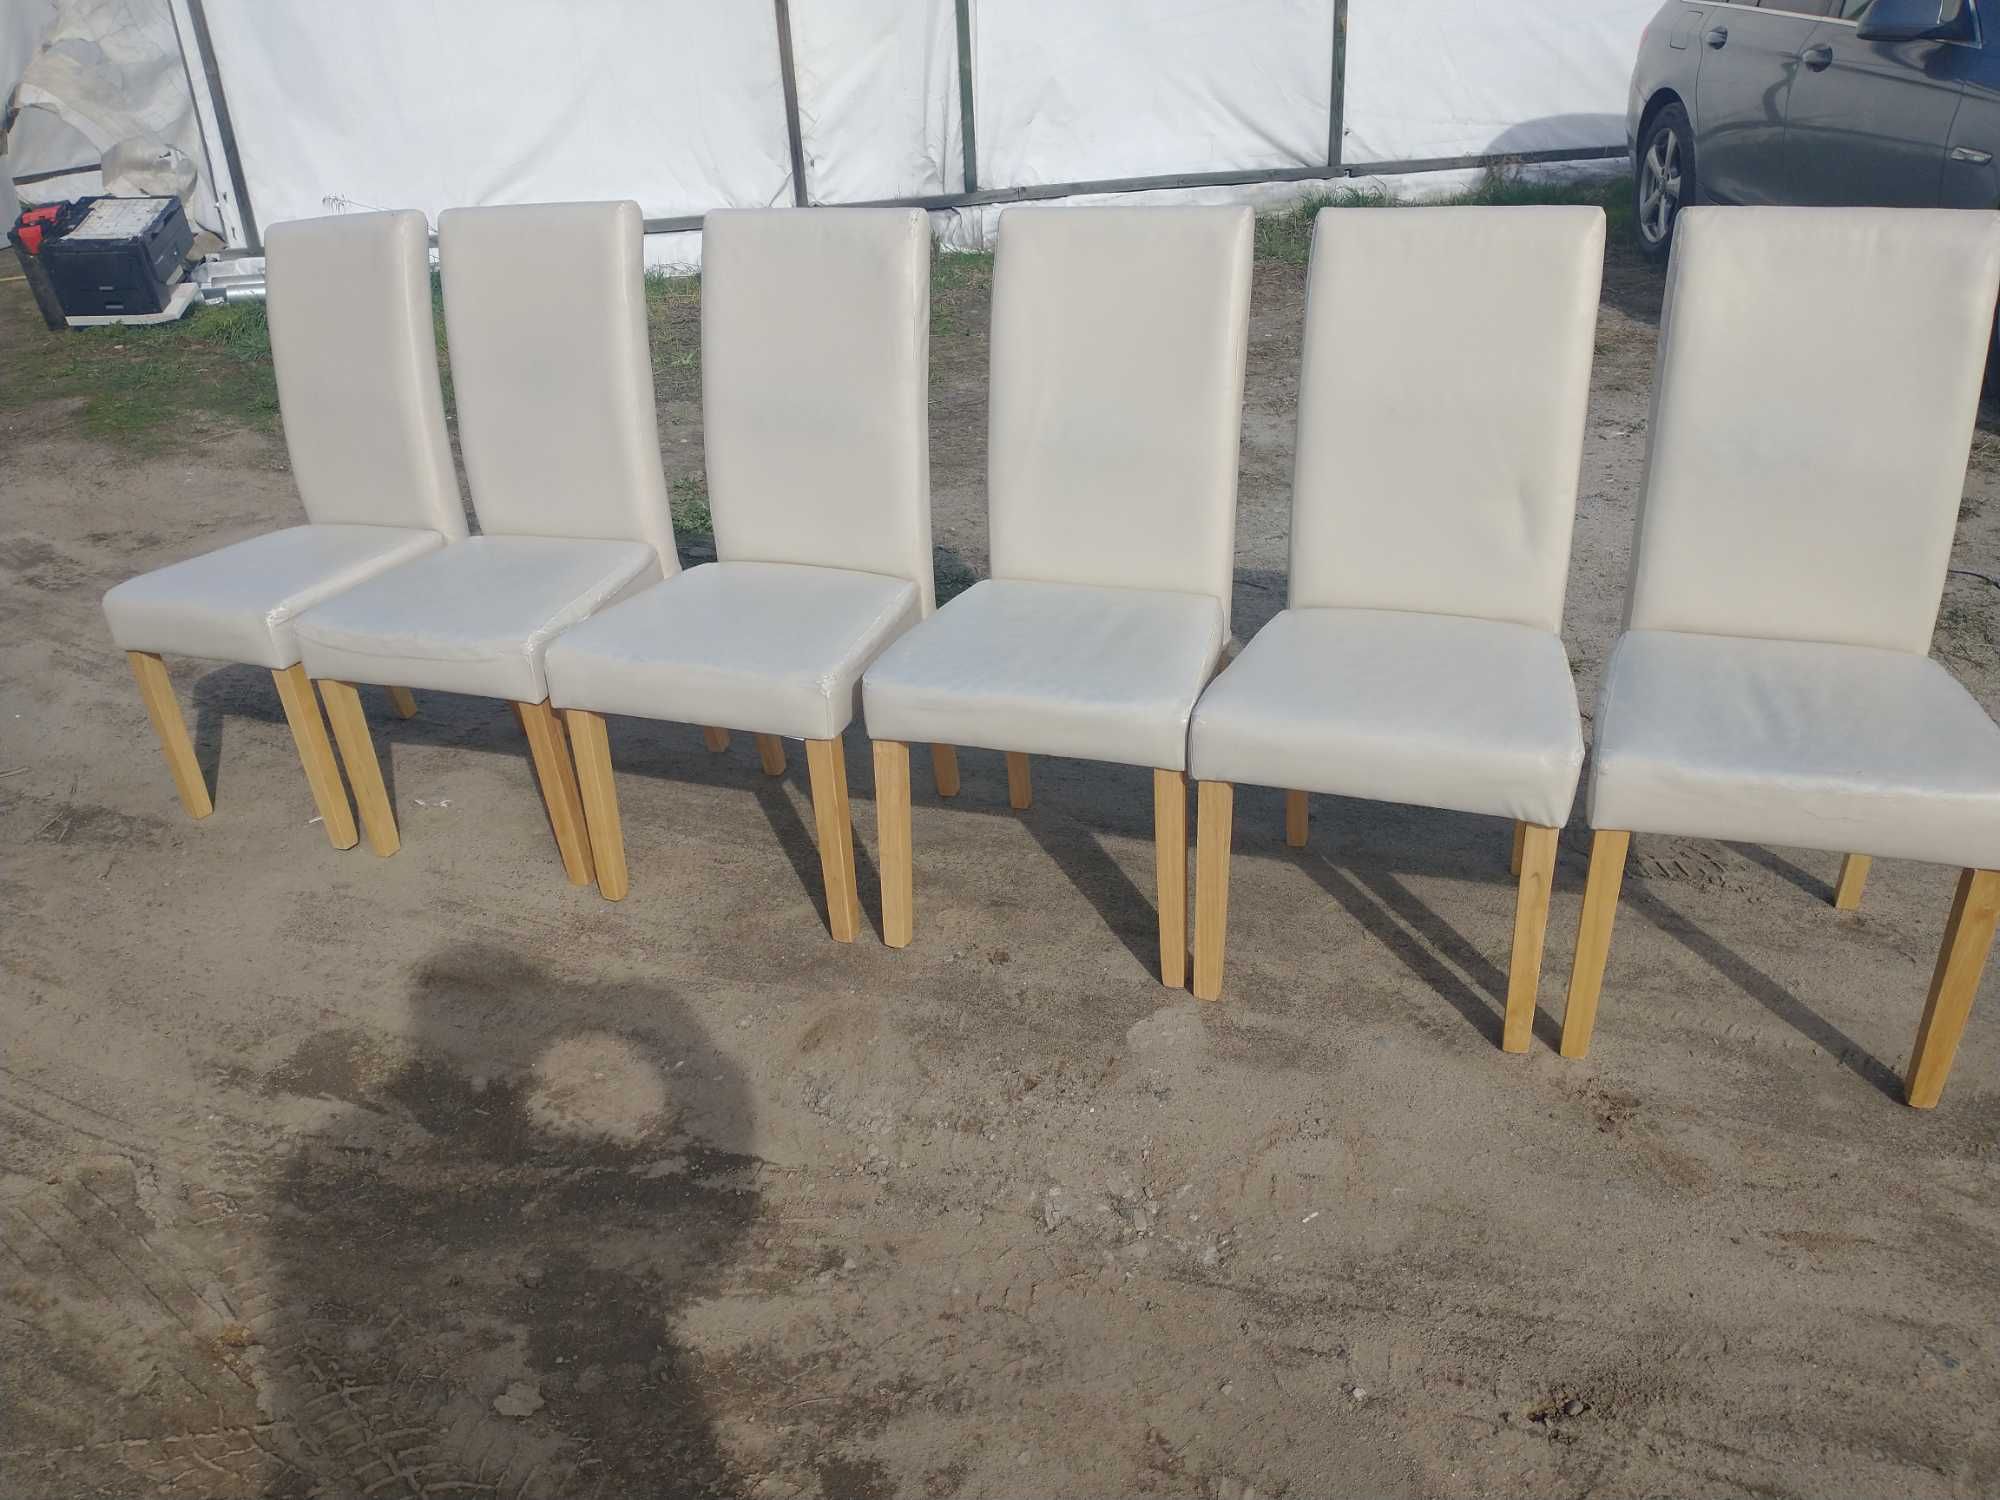 6 krzeseł - cena za komplet - możliwy transport